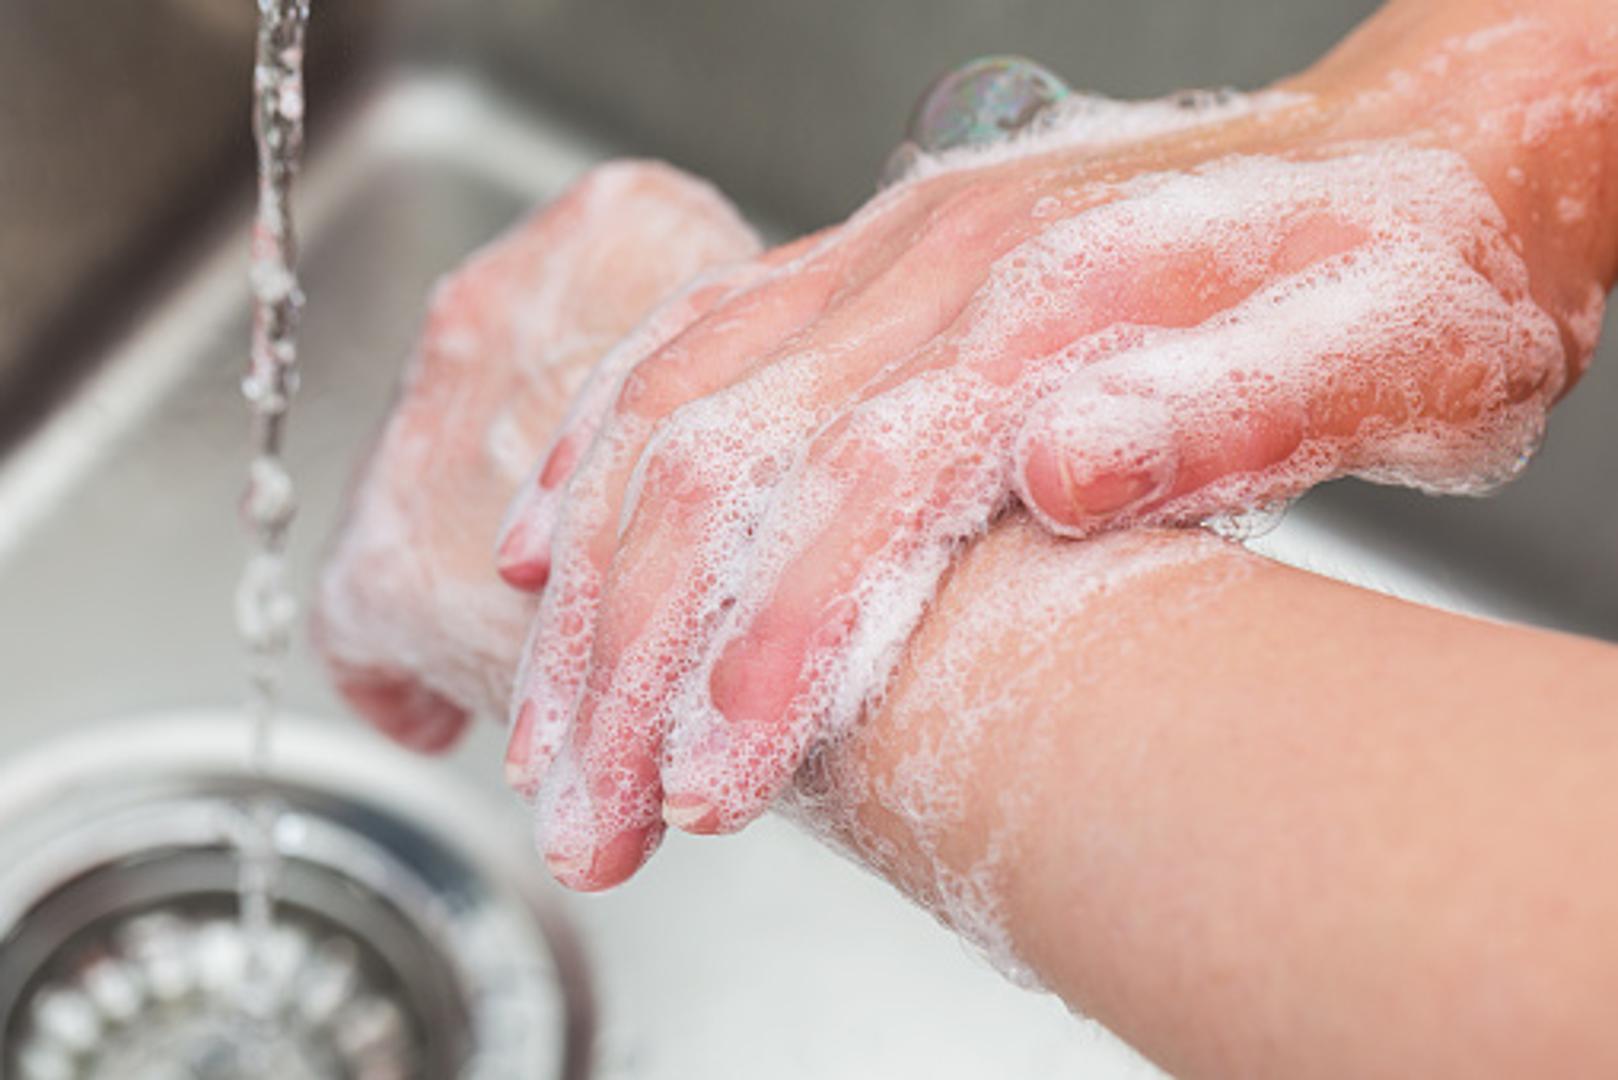 Ostali ruke peru u žurbi, tek toliko da ih "oplahnu vodom" i sapunom, često i bez sapuna, no to nikako ne bi trebala biti praksa. Napominju kako je ruke potrebno prati barem 20 sekundi kako bi većina štetnih mikroorganizama bila uklonjena.